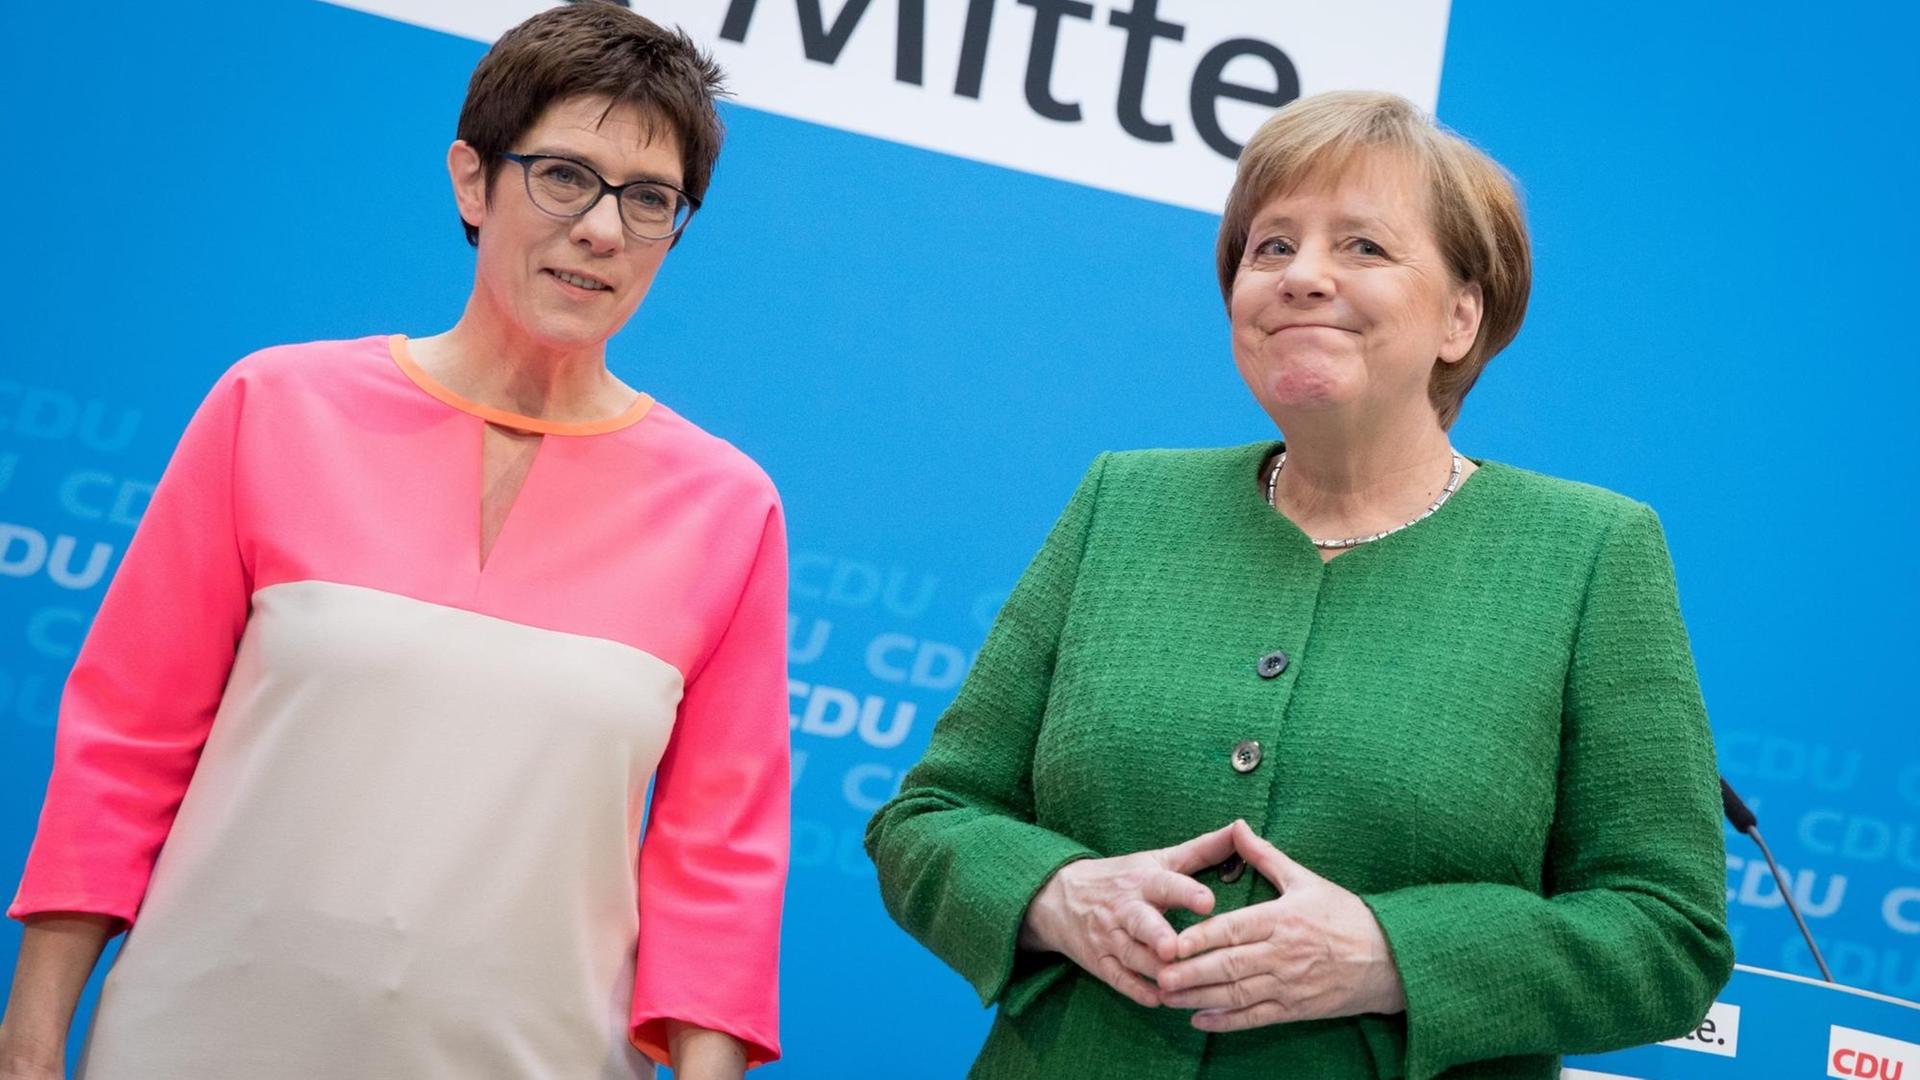 Bundeskanzlerin Angela Merkel (CDU) und Annegret Kramp-Karrenbauer, Saarlands Ministerpräsidentin (l, CDU) stehen auf einer Pressekonferenz im Konrad-Adenauer-Haus zusammen.